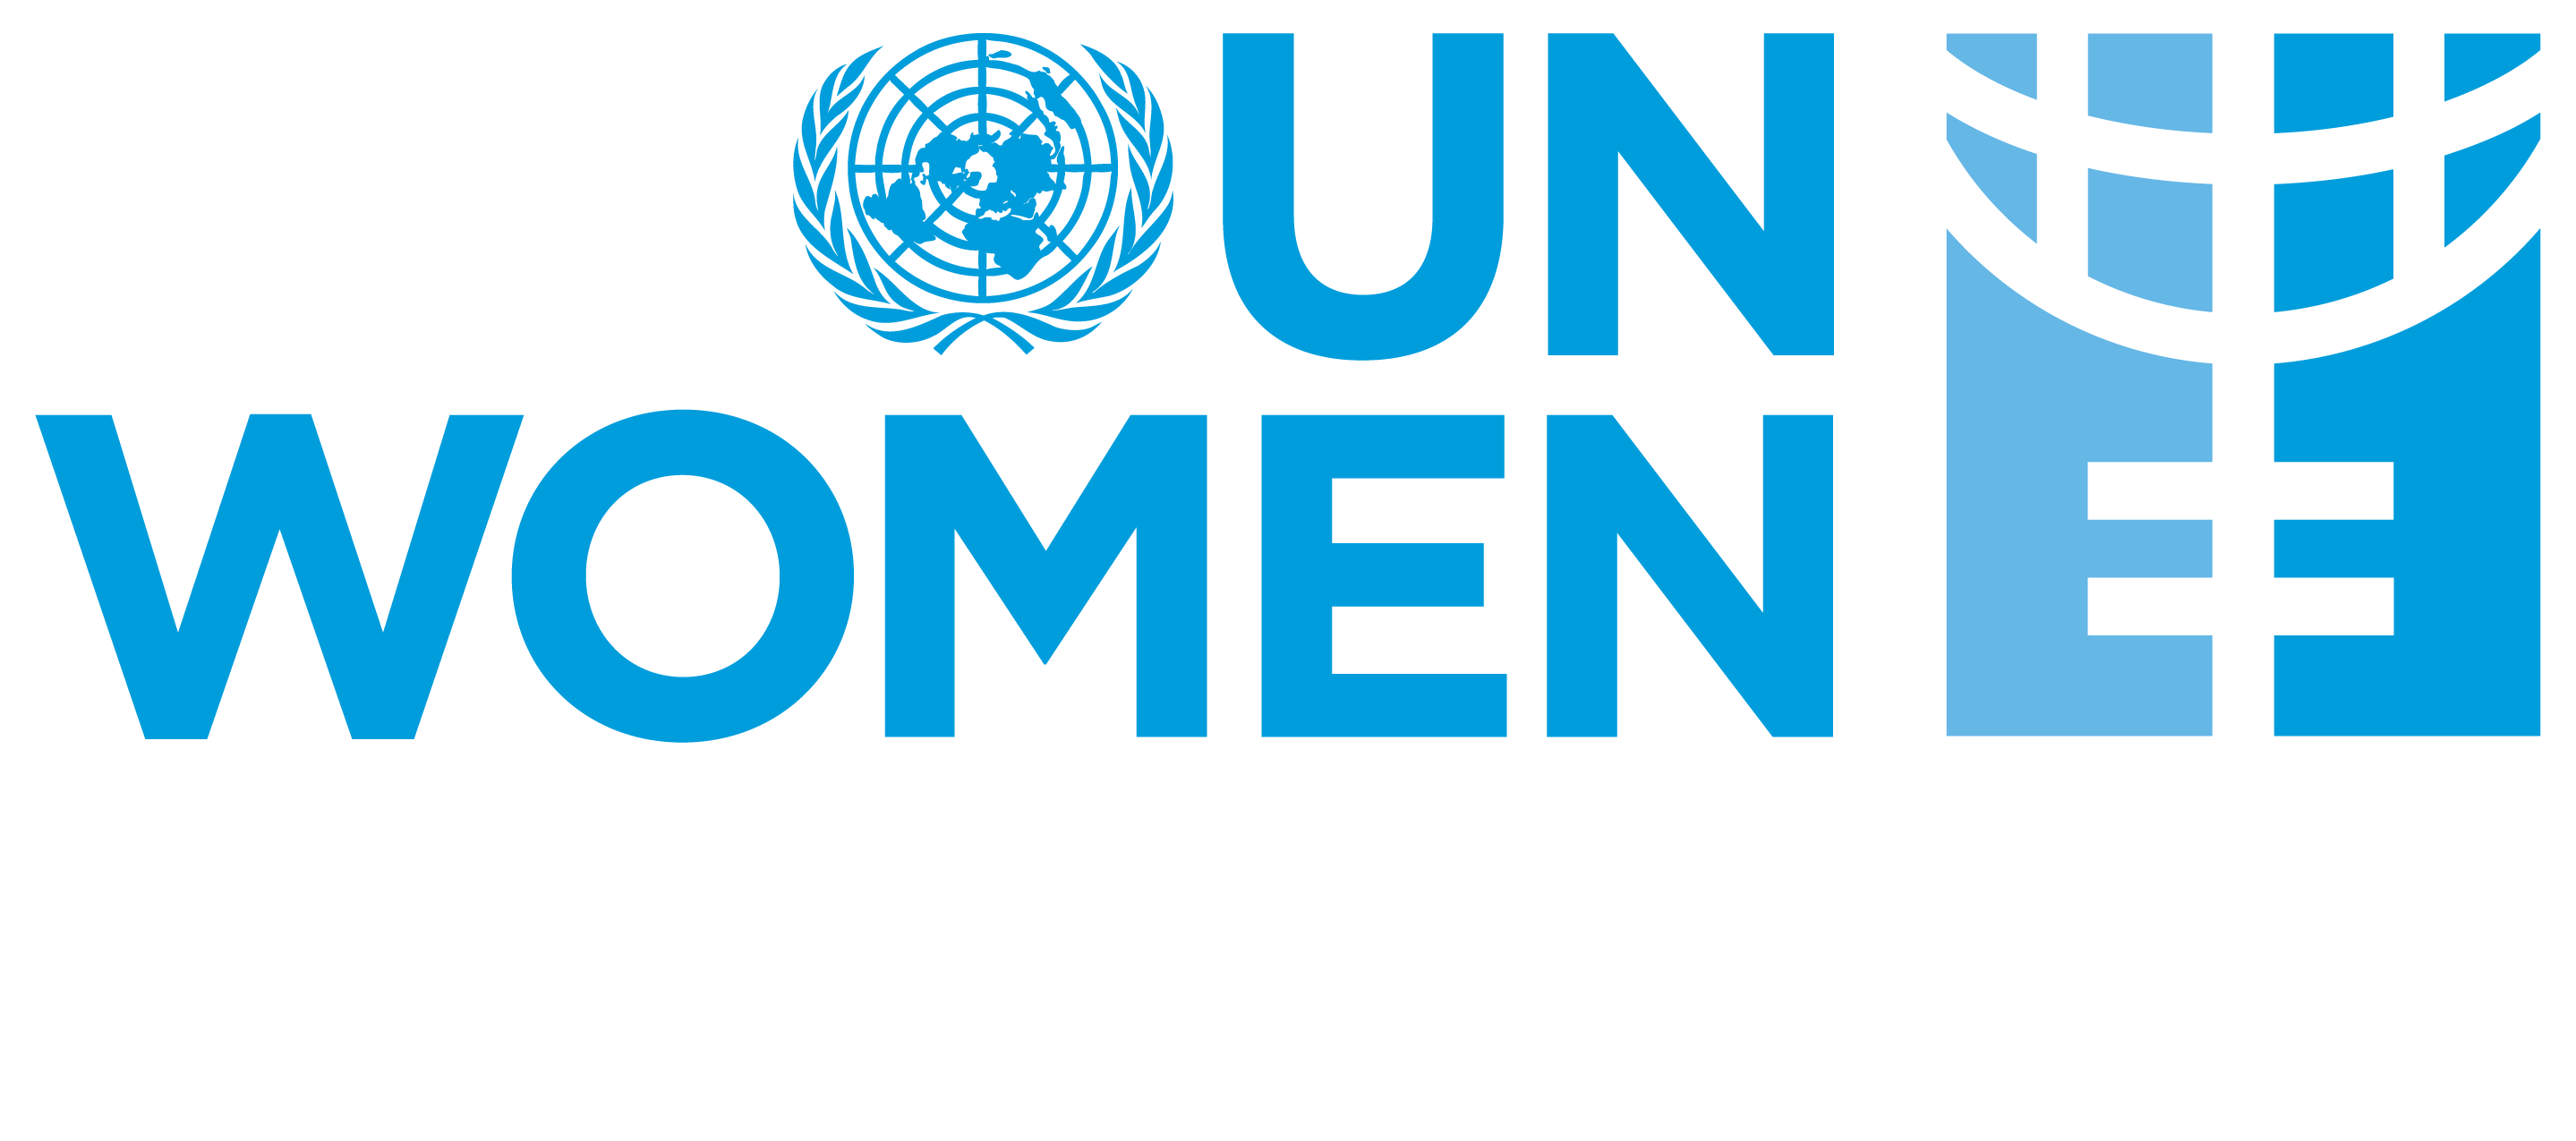 UN Women logo in colour